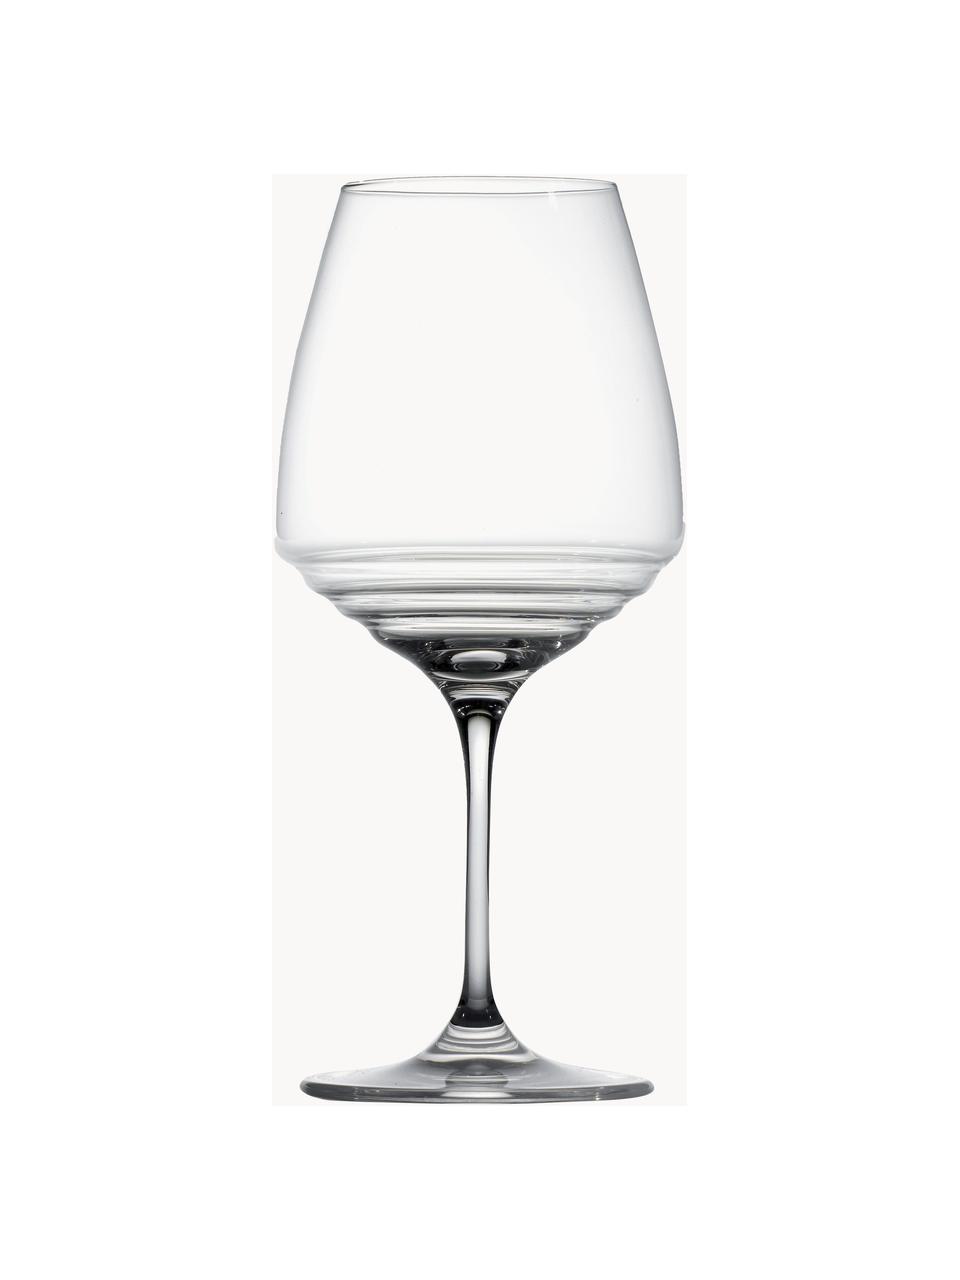 Bicchieri vino rosso in cristallo Esperienze 2 pz, Cristallo, Trasparente, Ø 10 x Alt. 22 cm, 600 ml